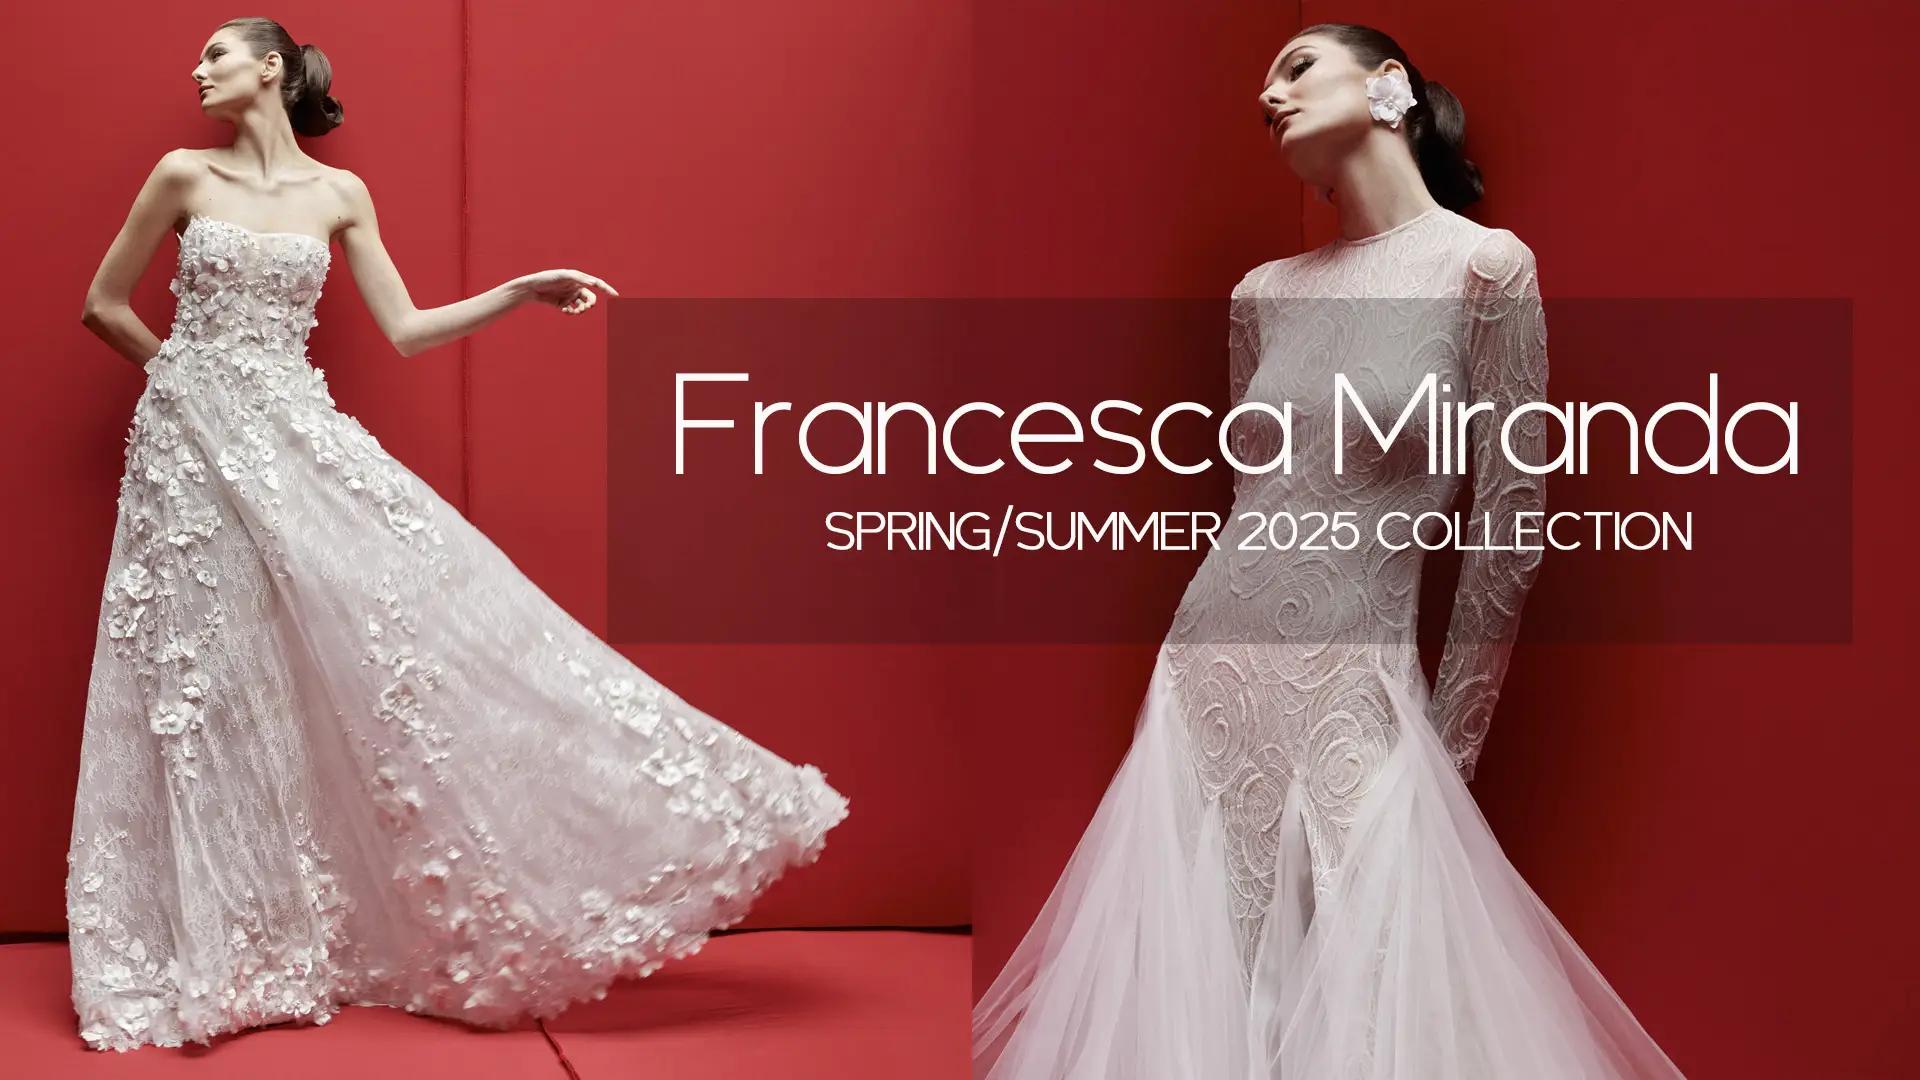 Francesca Miranda Trunk Show: Spring/Summer 2025 Collection